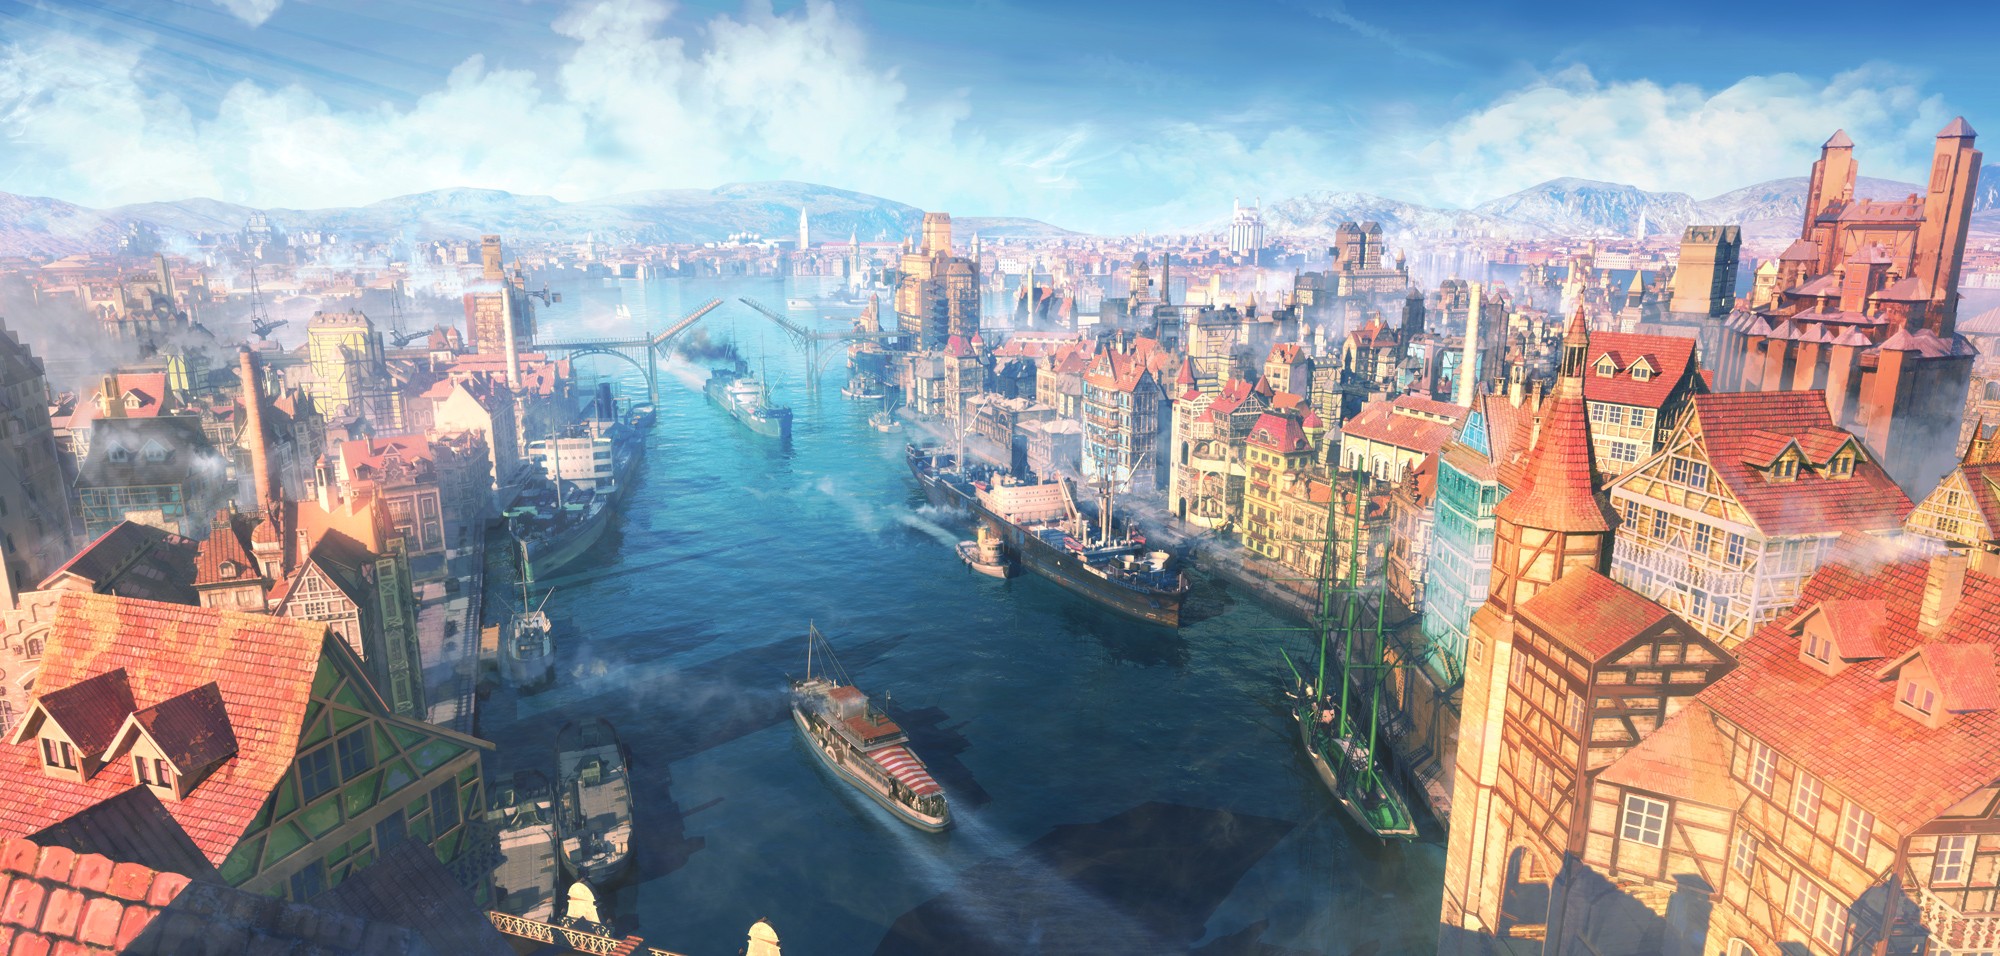 General 2000x956 canal CGI fantasy city cityscape ship sky artwork boat Vasco 